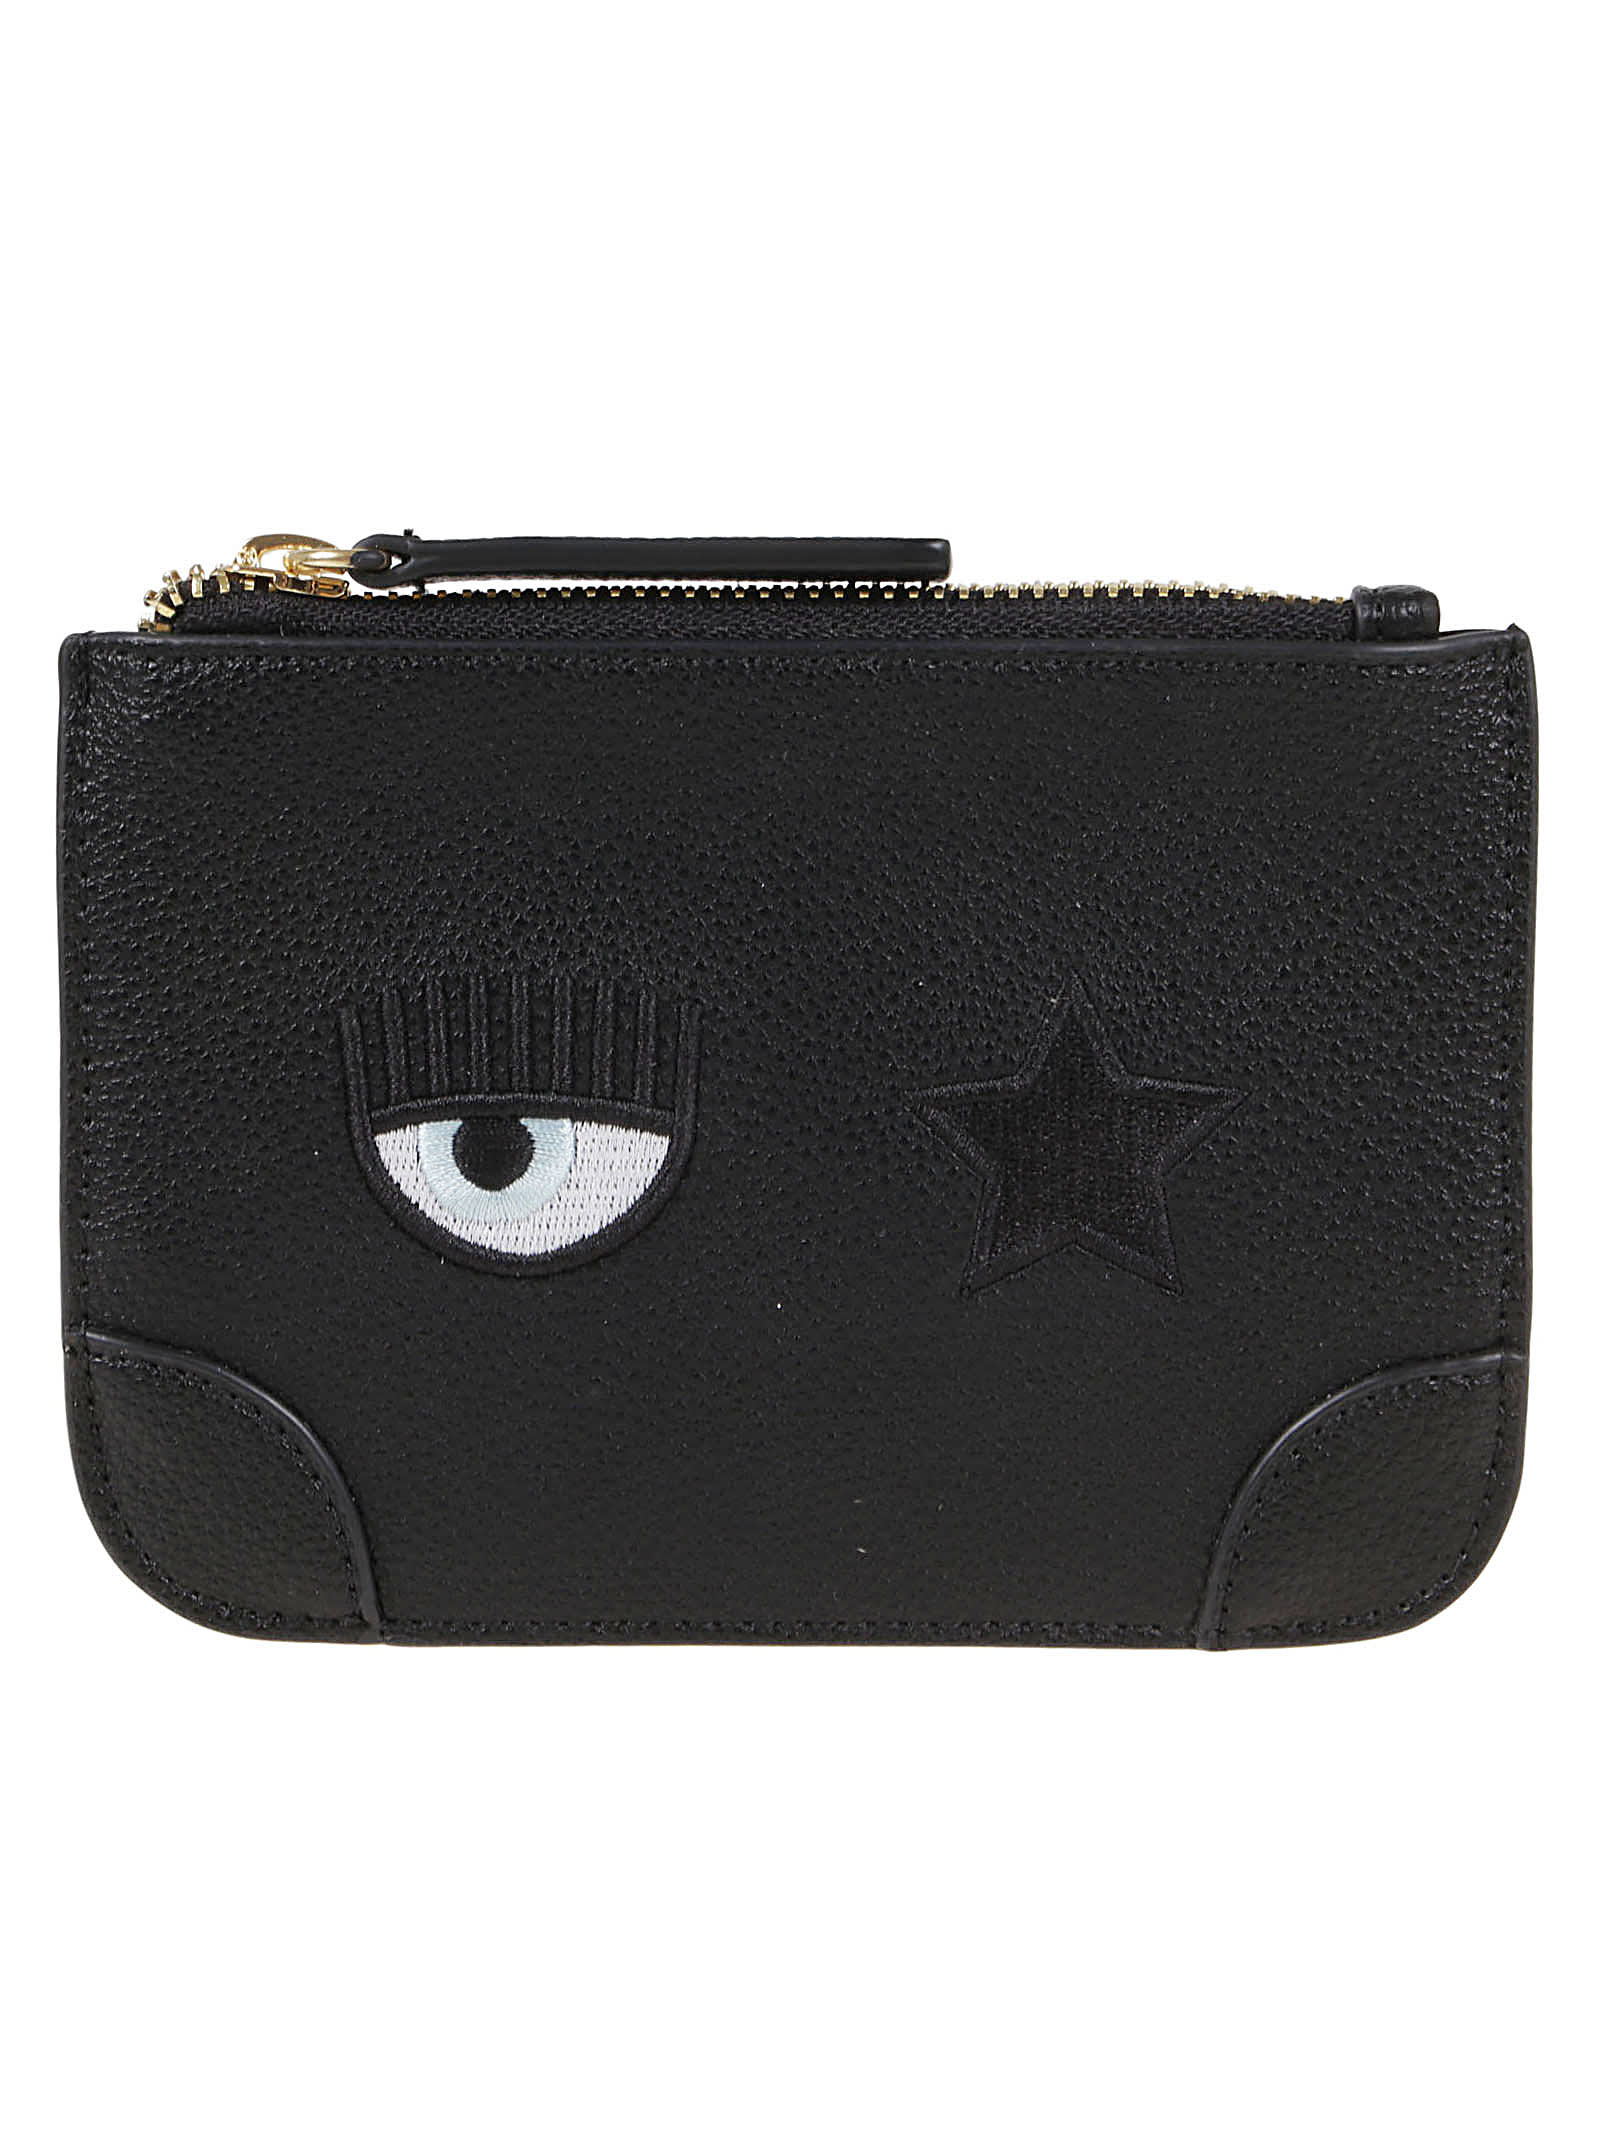 Chiara Ferragni Eye Star Logo, Sketch 07 Small Leather Goods